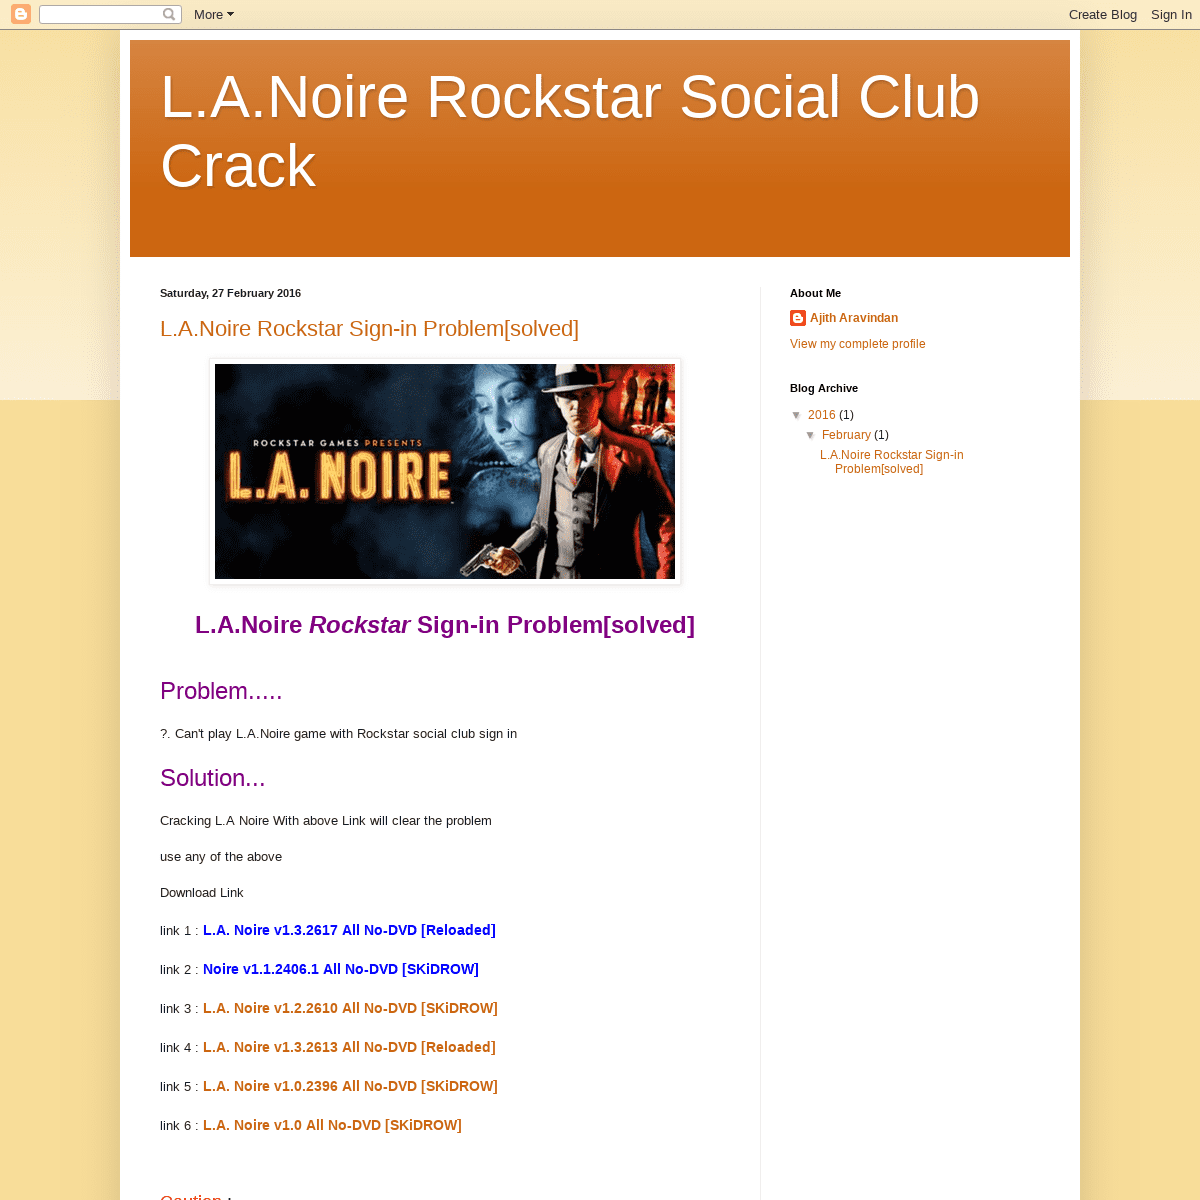 L.A.Noire Rockstar Social Club Crack